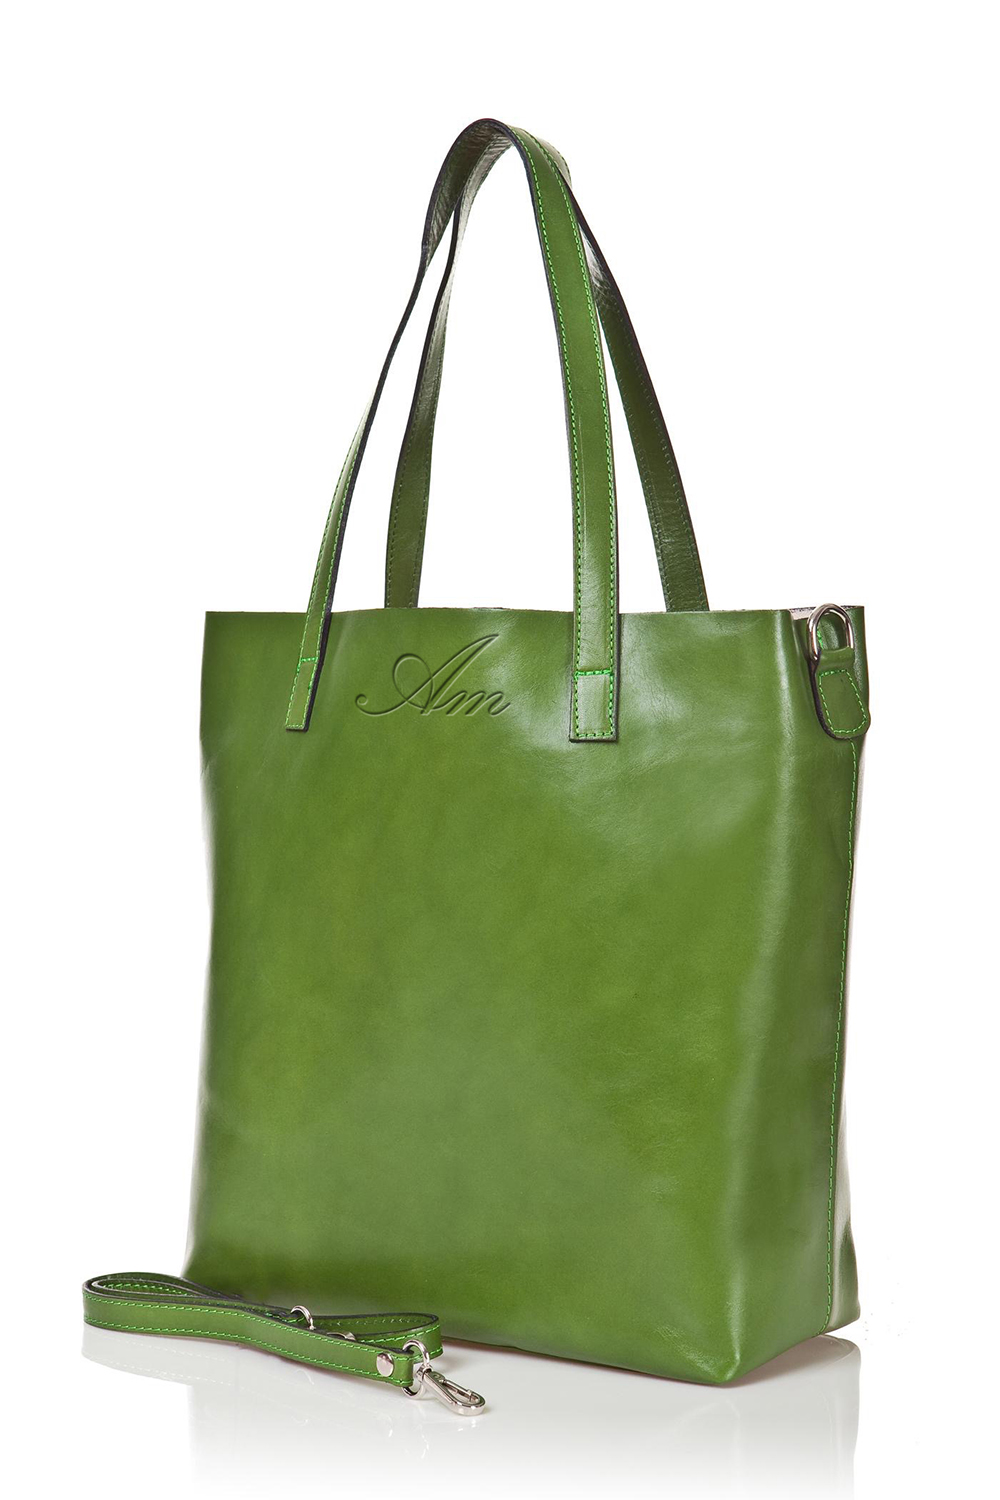 Alti Mora top luxury women handbag : Way-shop